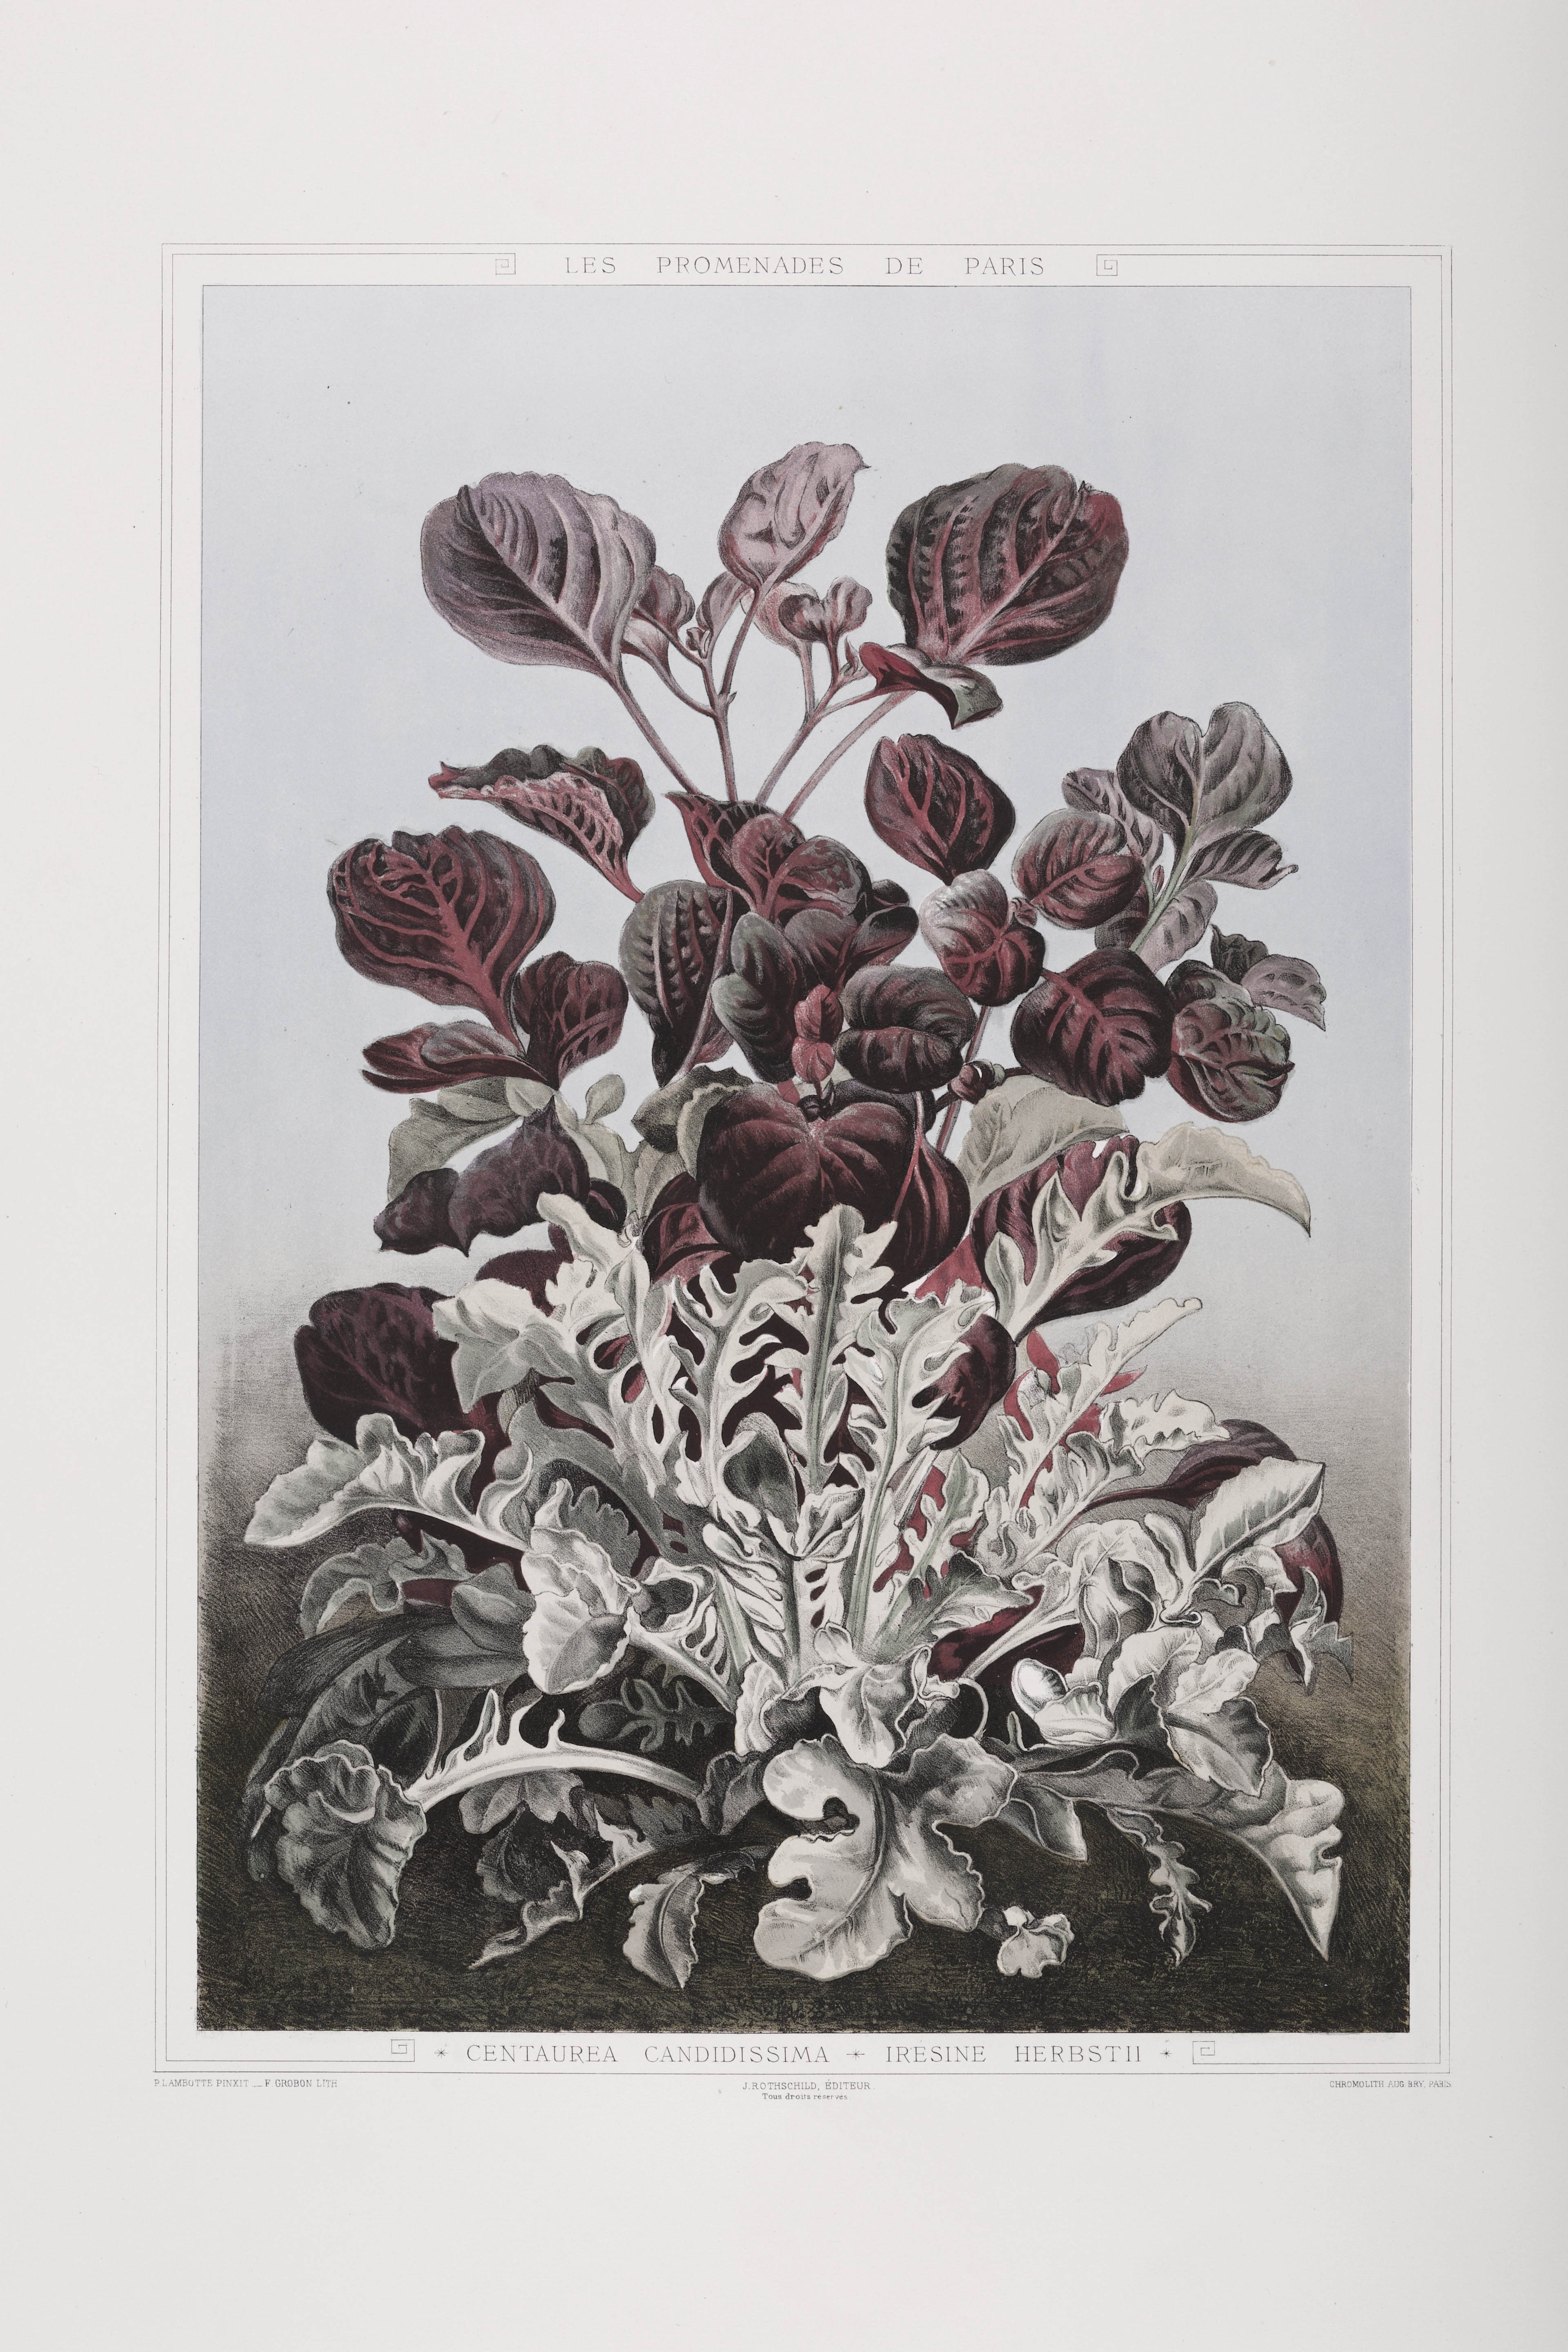 Centaurea candidassimo et irésine herbstii, volume II © Cité de l'architecture & du patrimoine/Musée des Monuments français